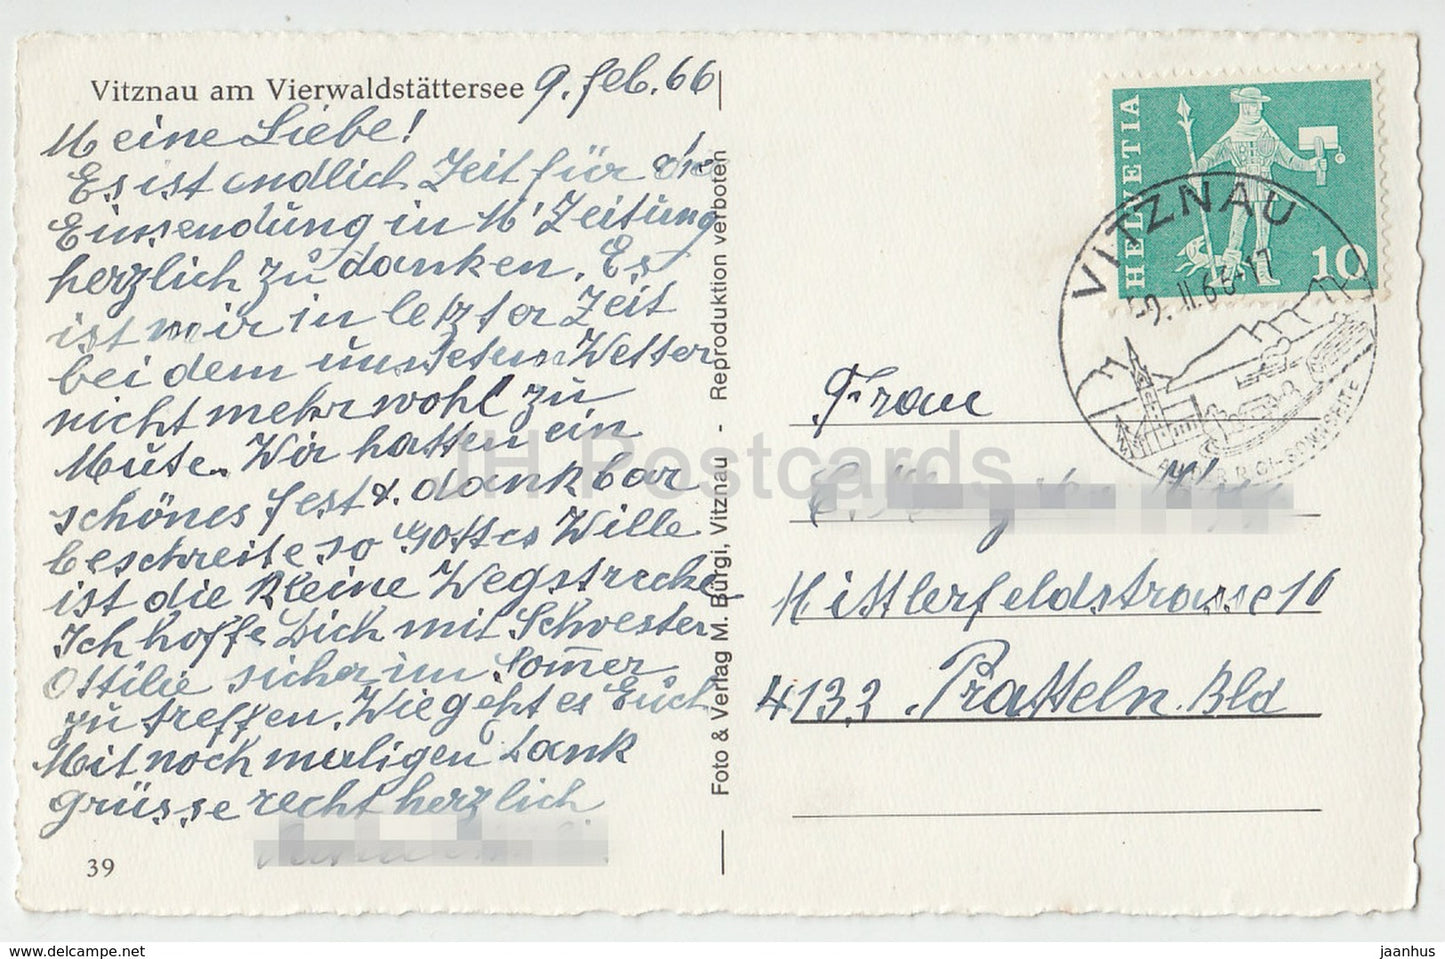 Vitznau am Vierwaldstattersee - Suisse - 39 - 1966 - occasion